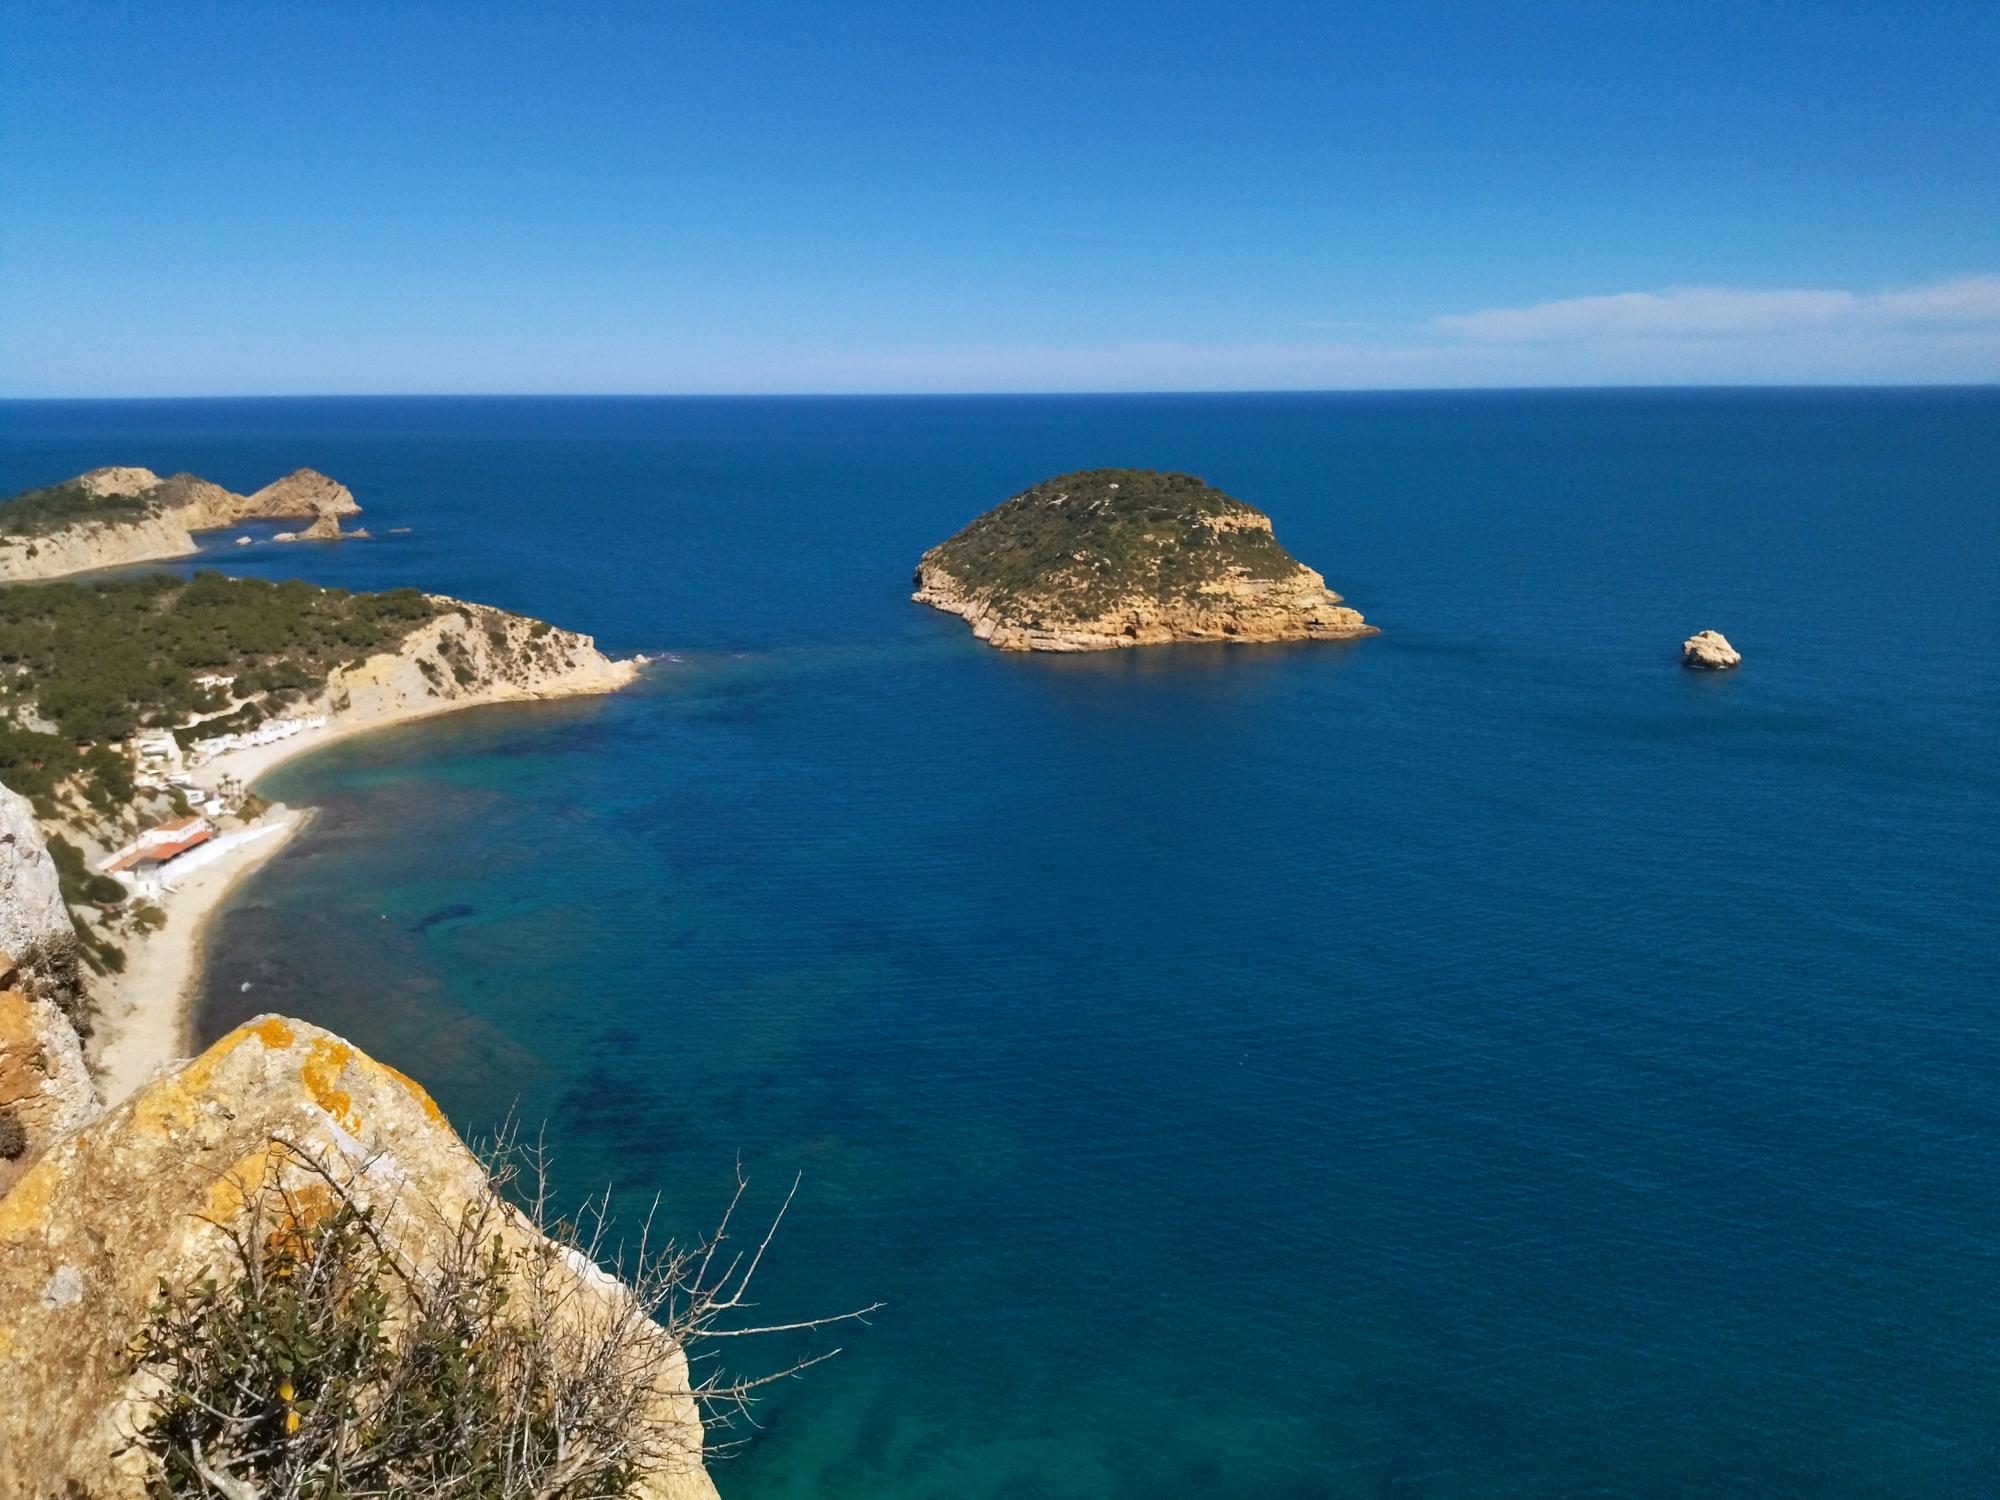 L'Illa del Portitxol y la cala de la Barraca, desde la atalaya de la Falzia